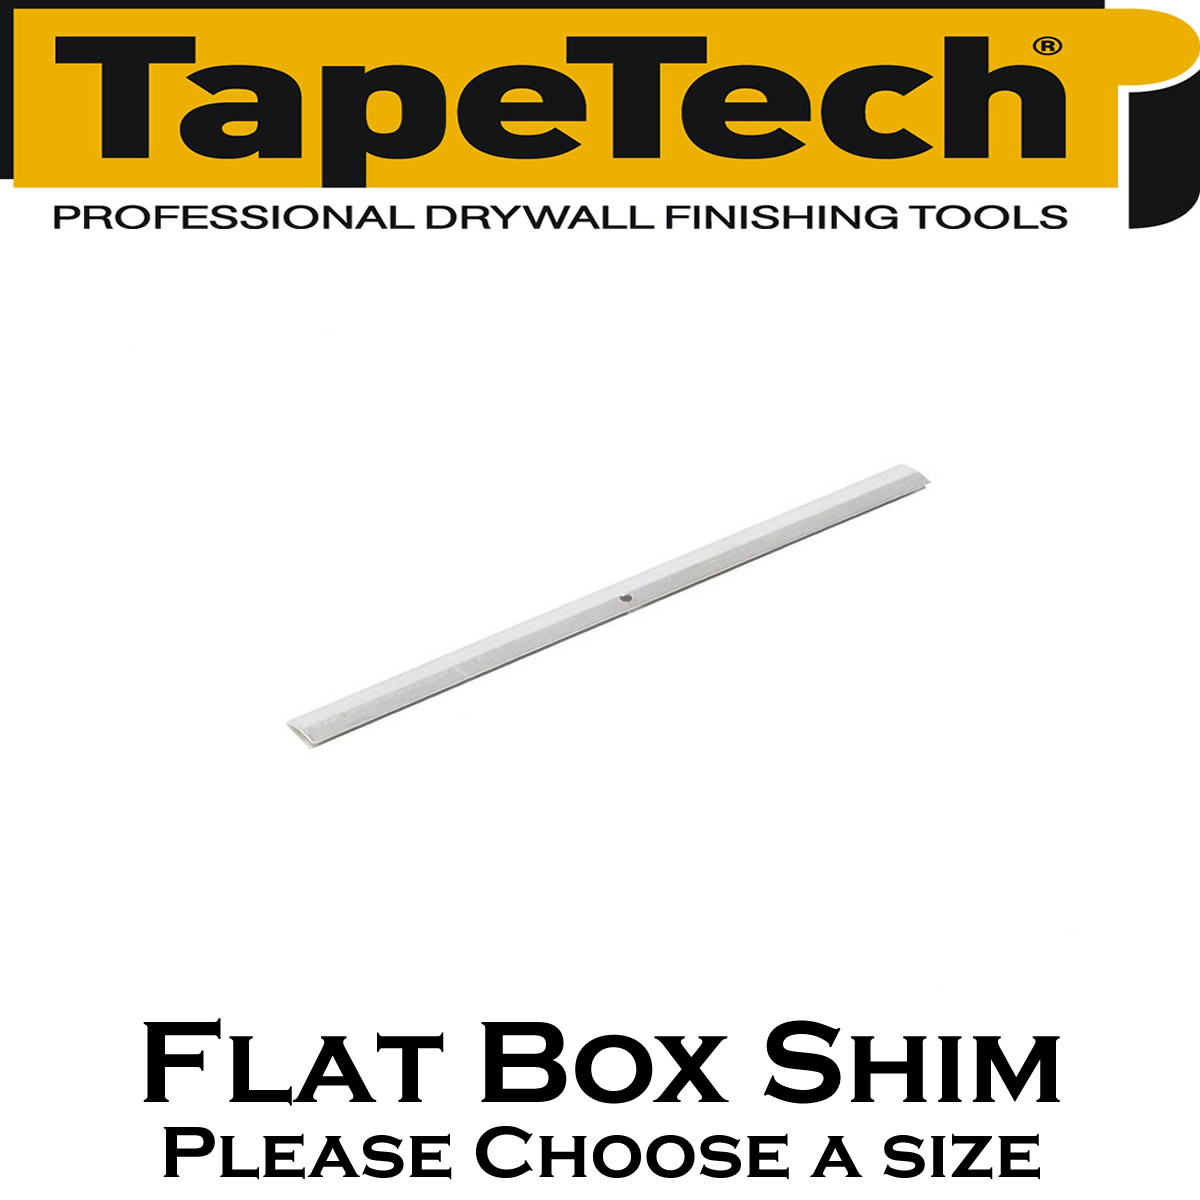 TapeTech Box Shims